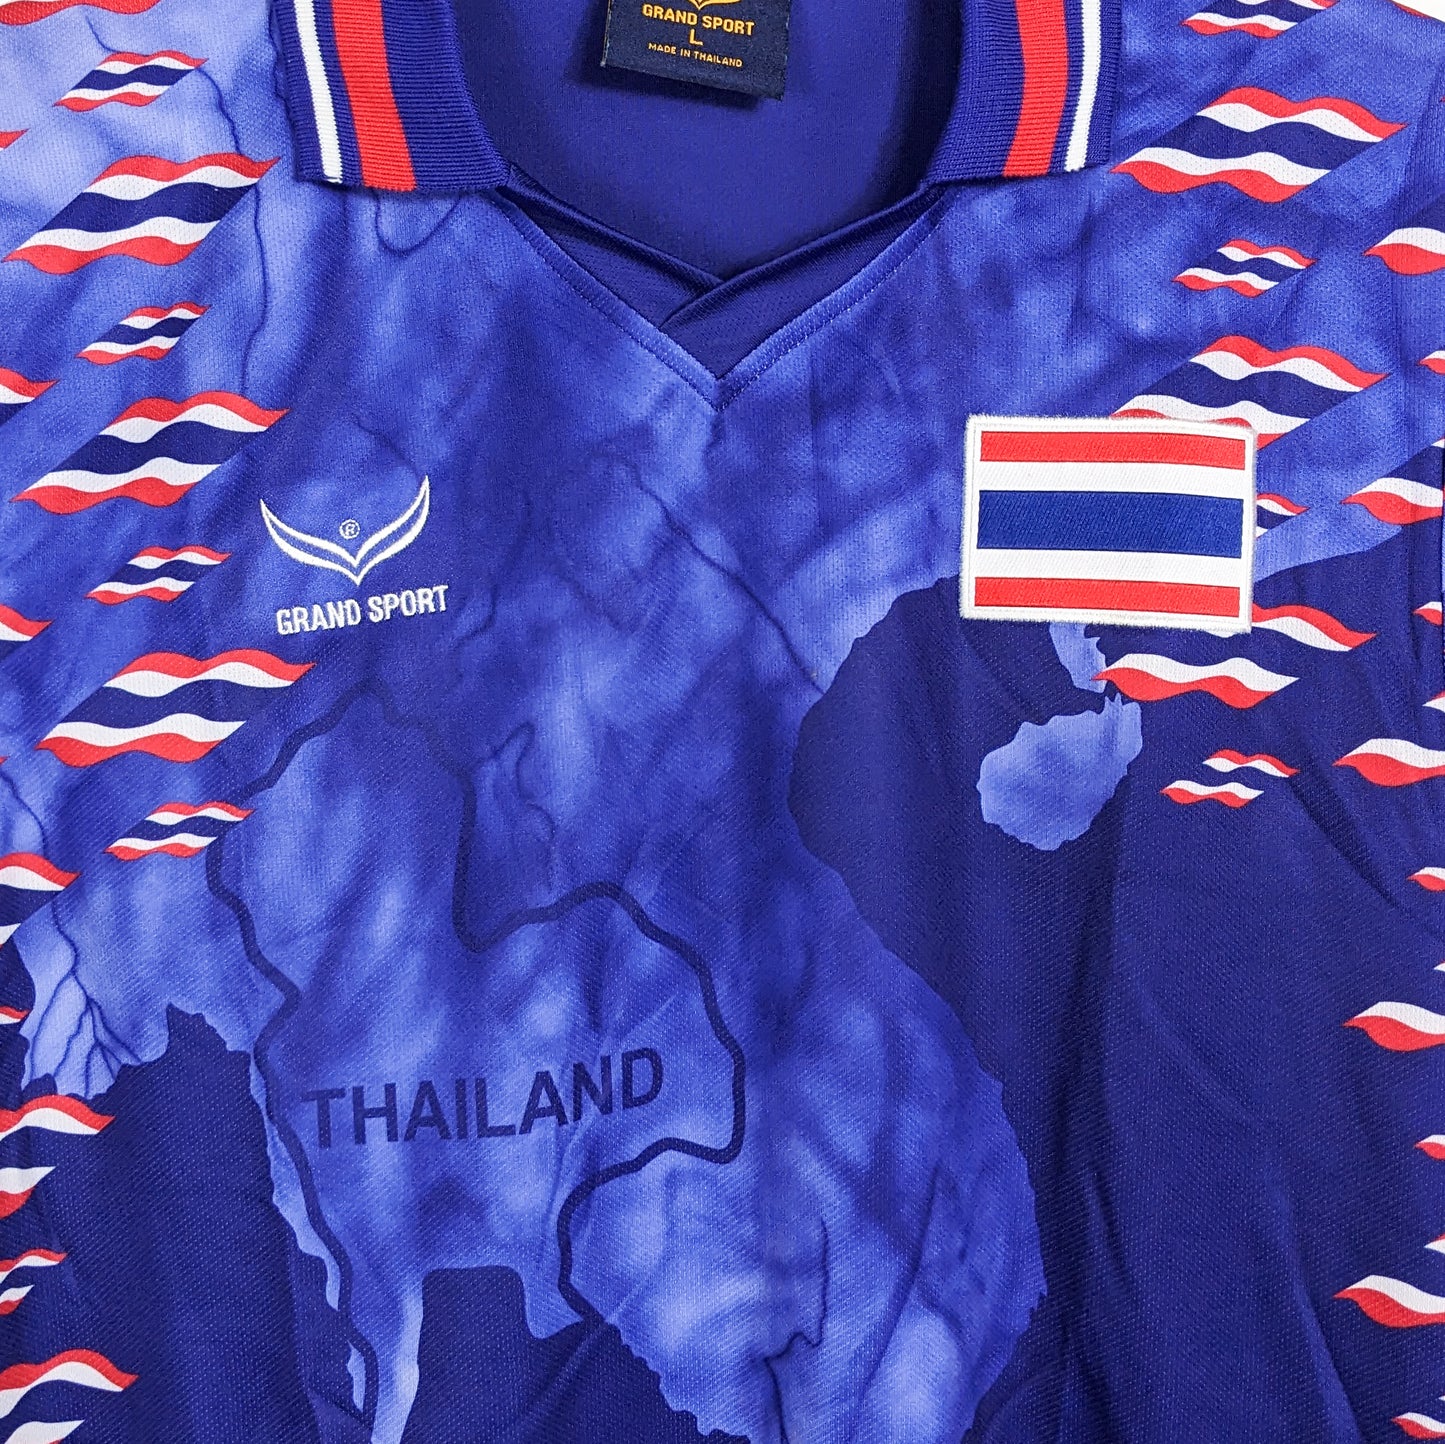 Authentic Thailand 1997 Home - Size L fit M